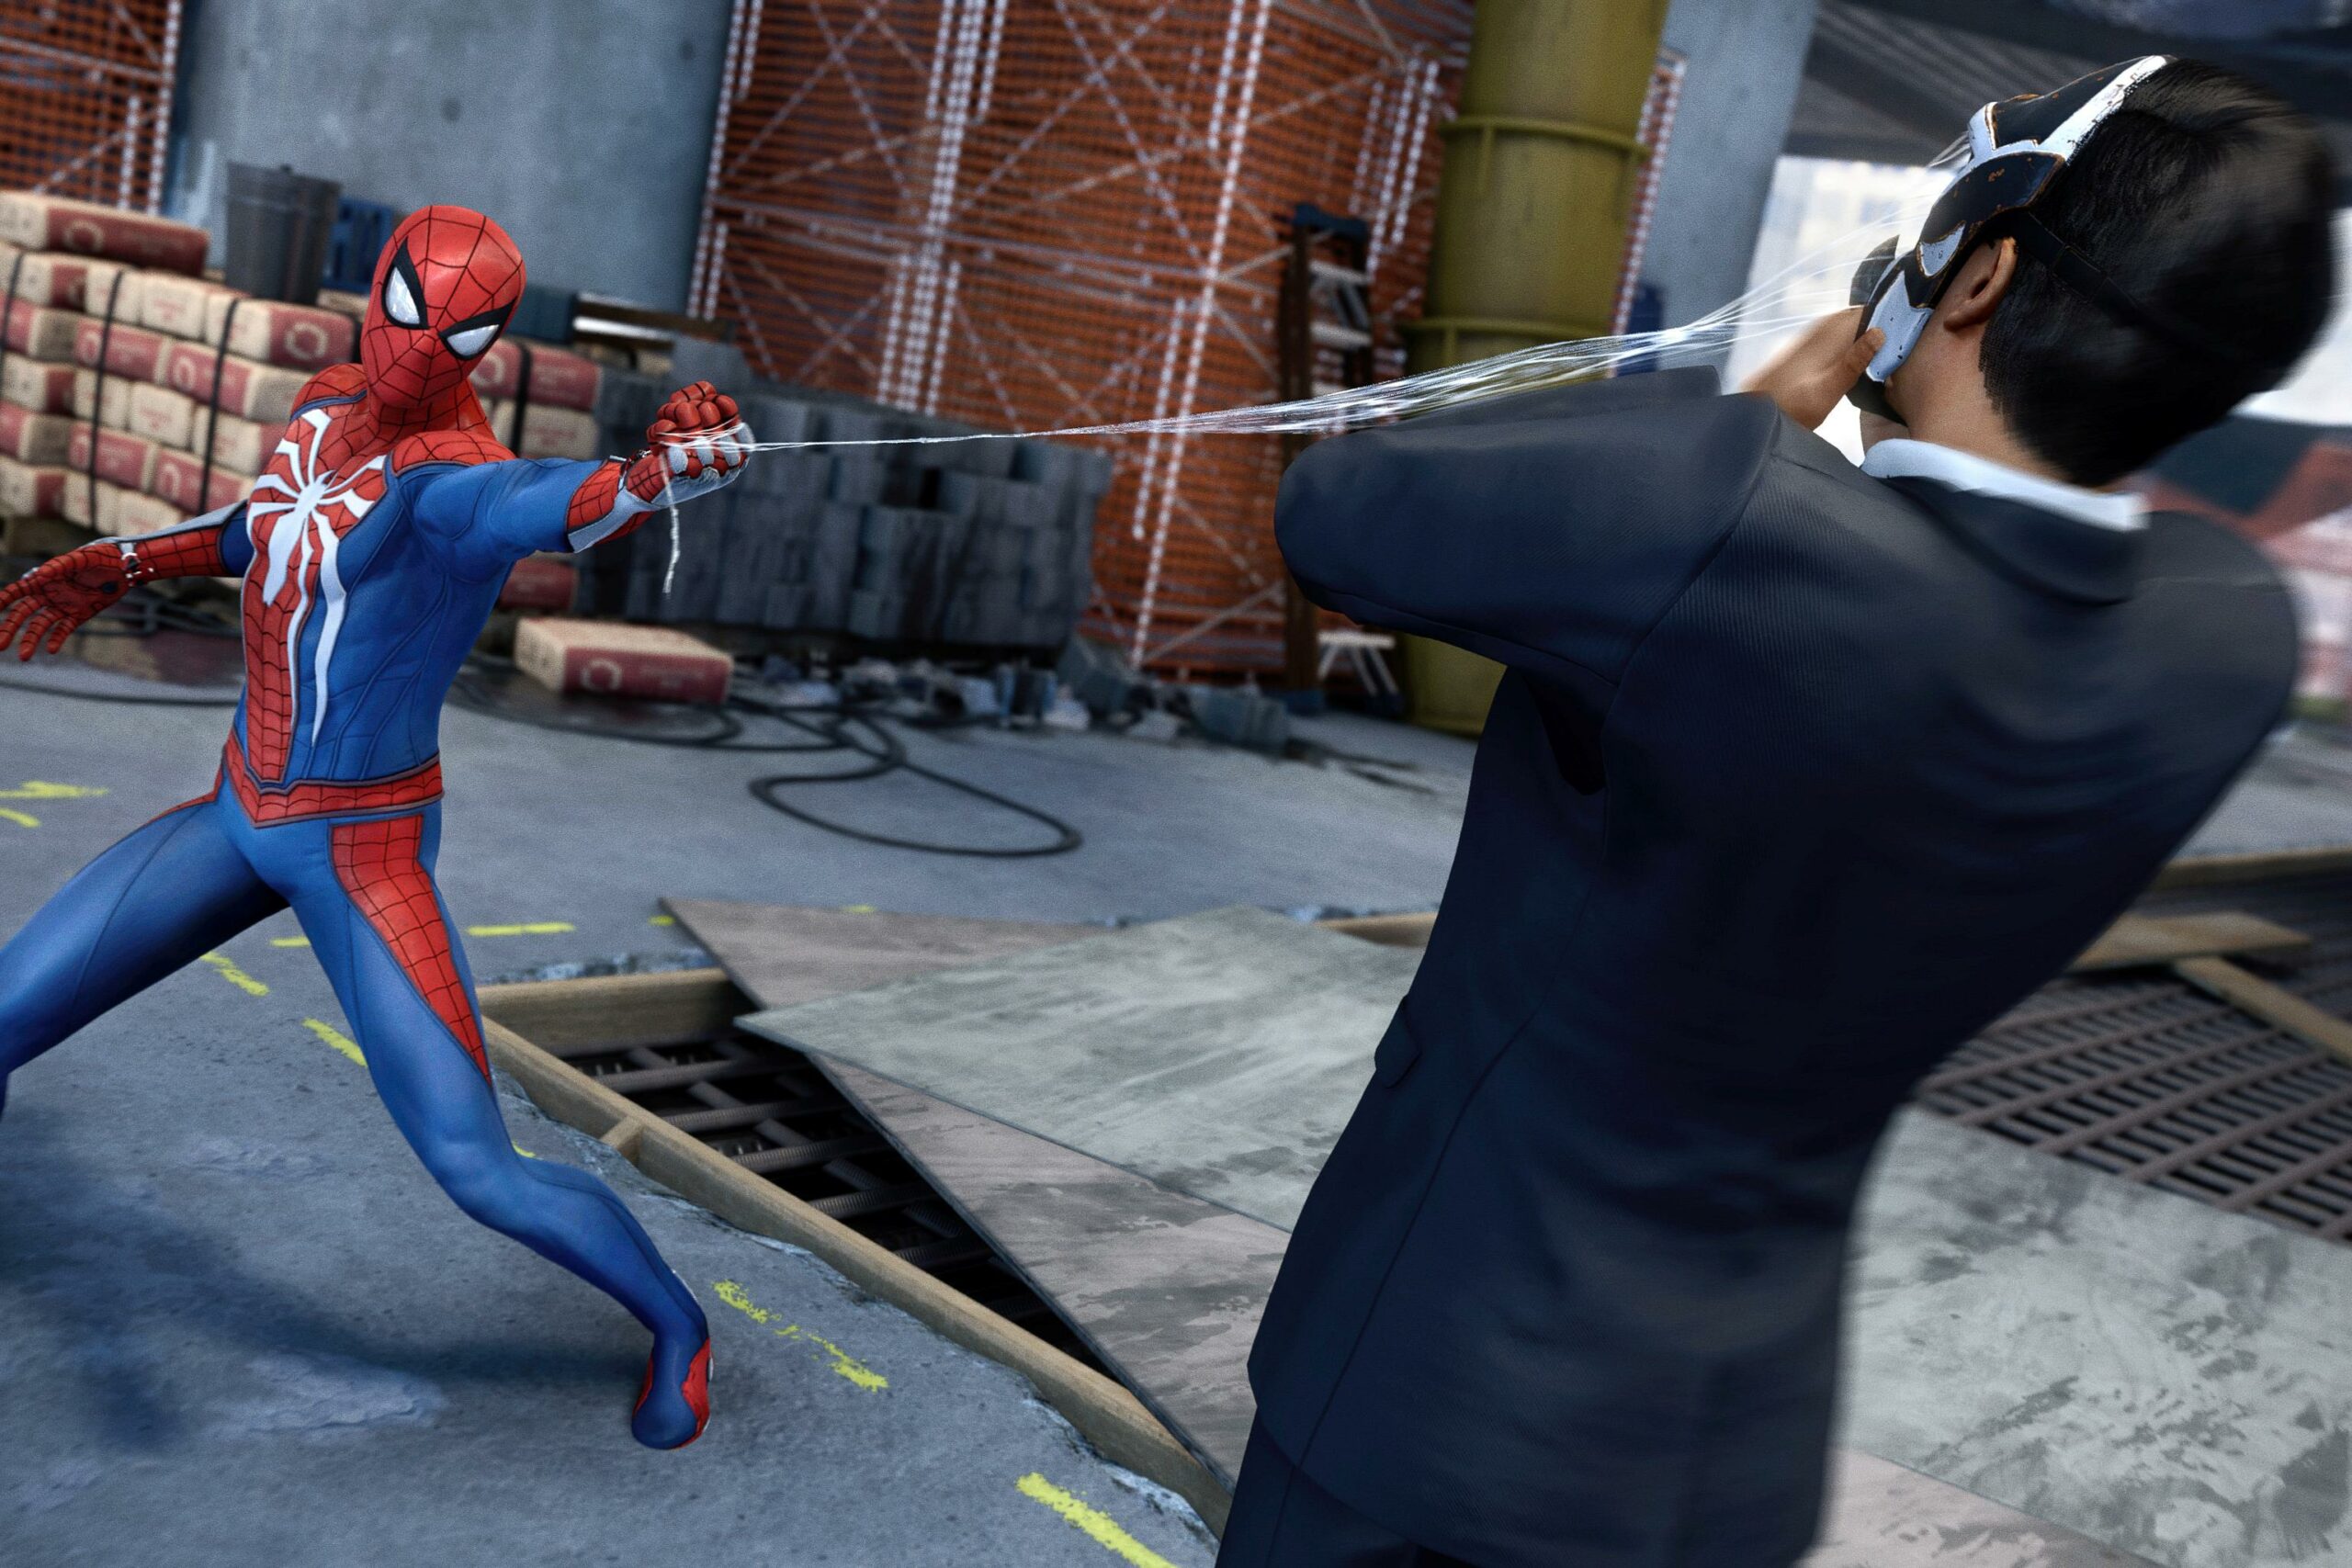 Homem-Aranha PS4  Jogo é aclamado pela crítica: O melhor do